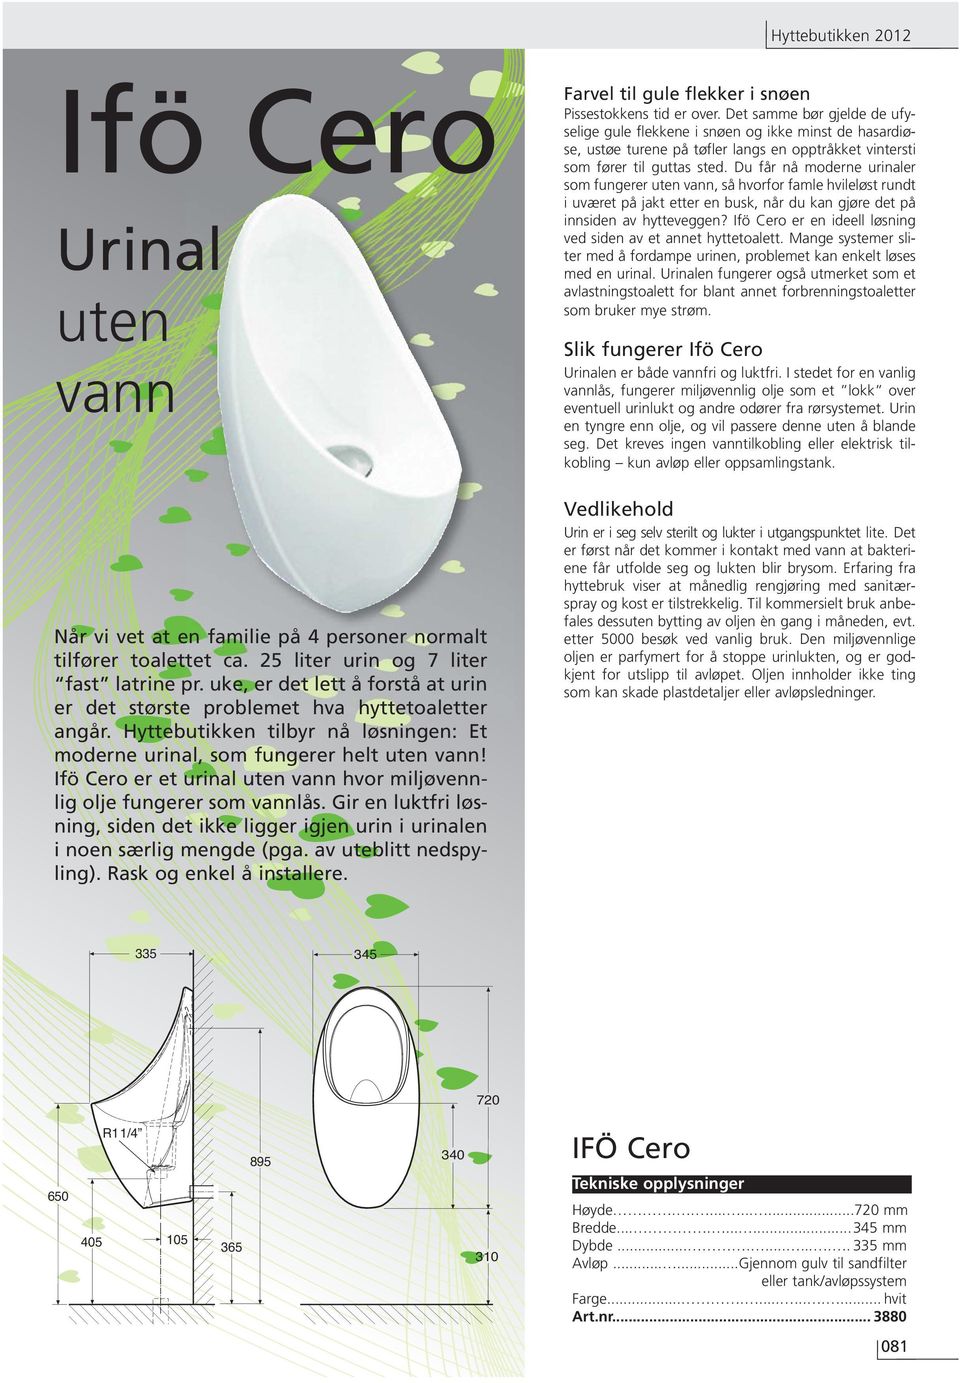 Ifö Cero er et urinal uten vann hvor miljøvennlig olje fungerer som vannlås. Gir en luktfri løsning, siden det ikke ligger igjen urin i urinalen i noen særlig mengde (pga. av uteblitt nedspyling).